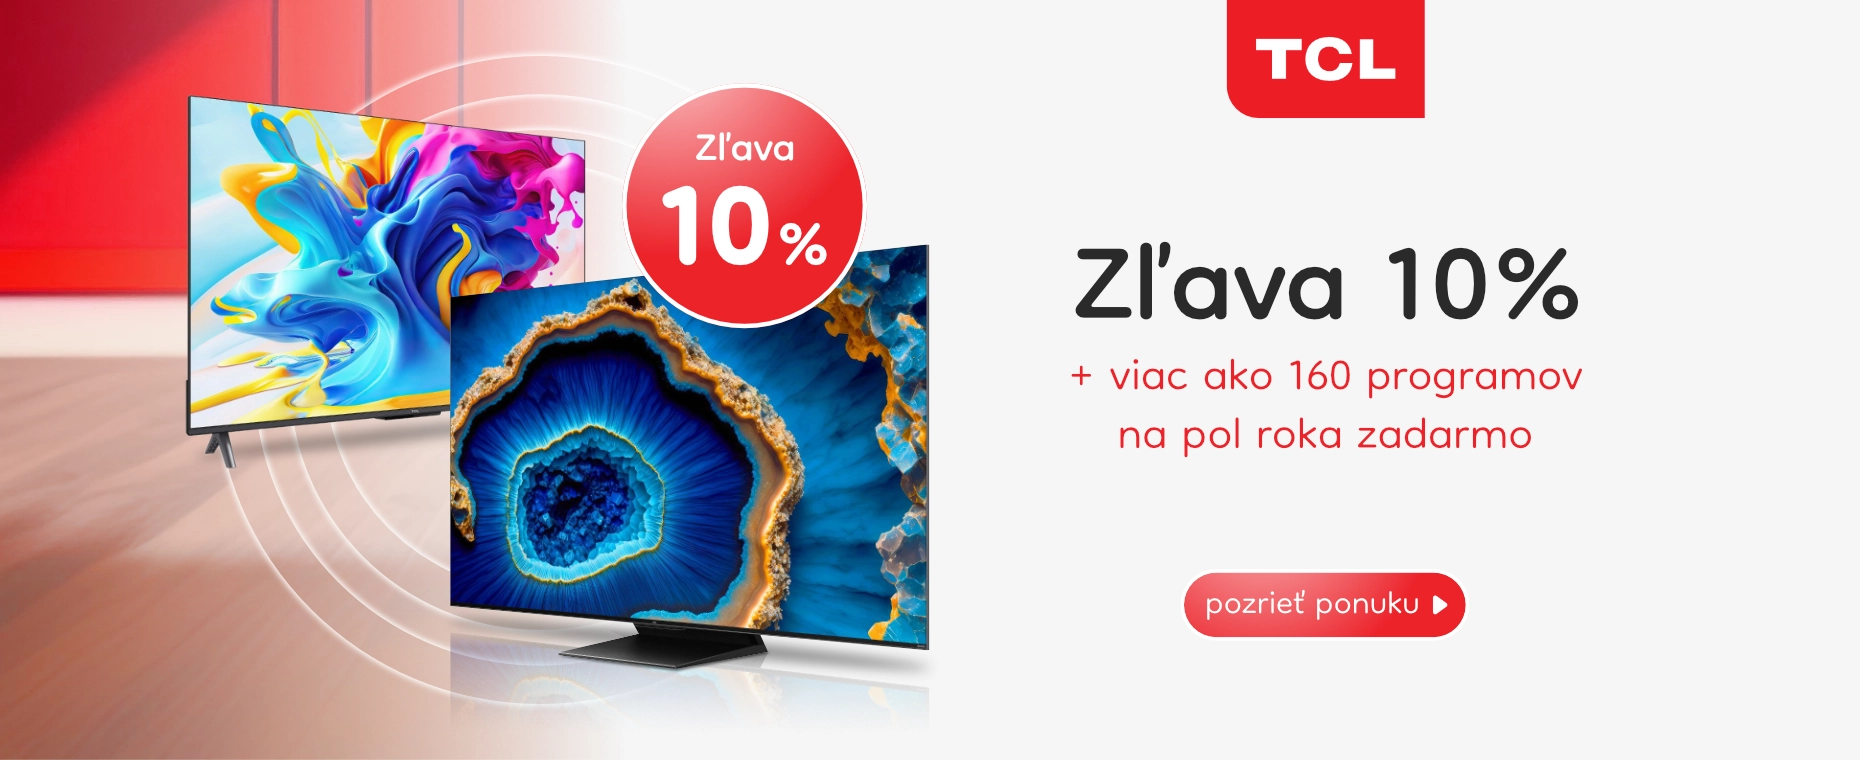 TCL TV 10%